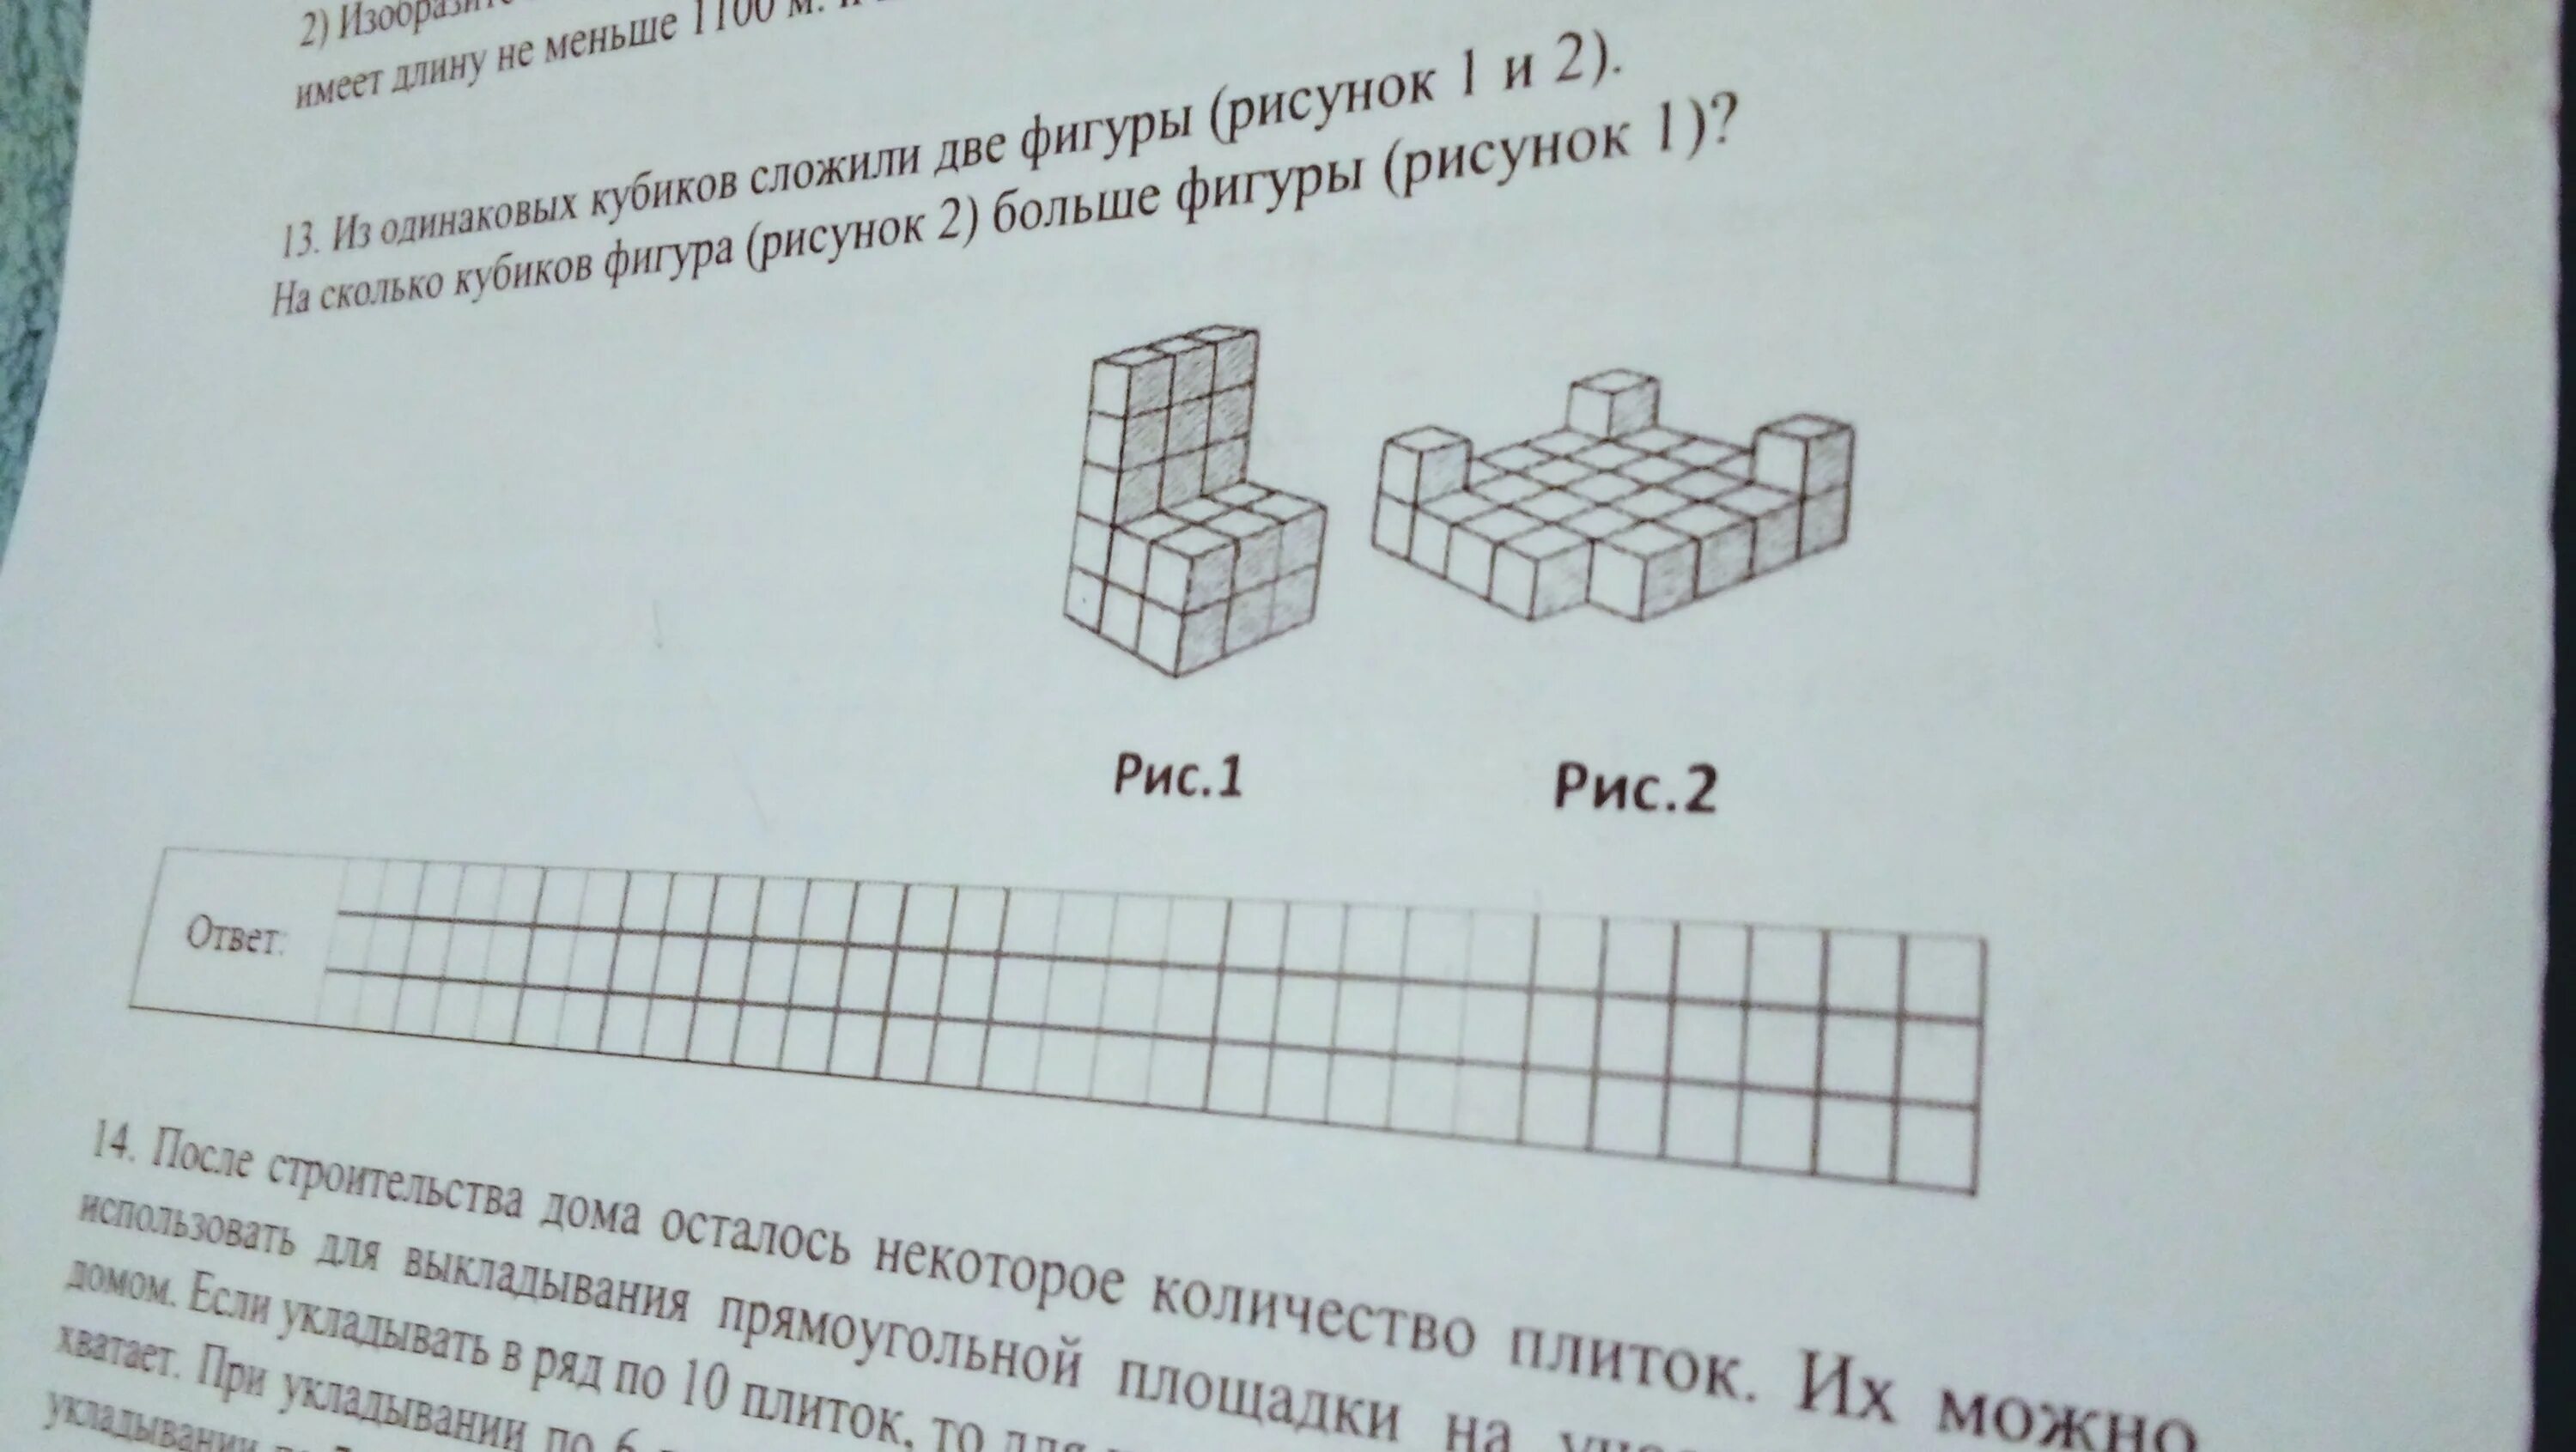 Фигуры из одинаковых кубиков. Из одинаковых кубиков сложили фигуру. Перед тобой фигура состоящая из одинаковых кубиков. Из одинаковых кубиков сложили фигуру рисунок 1.